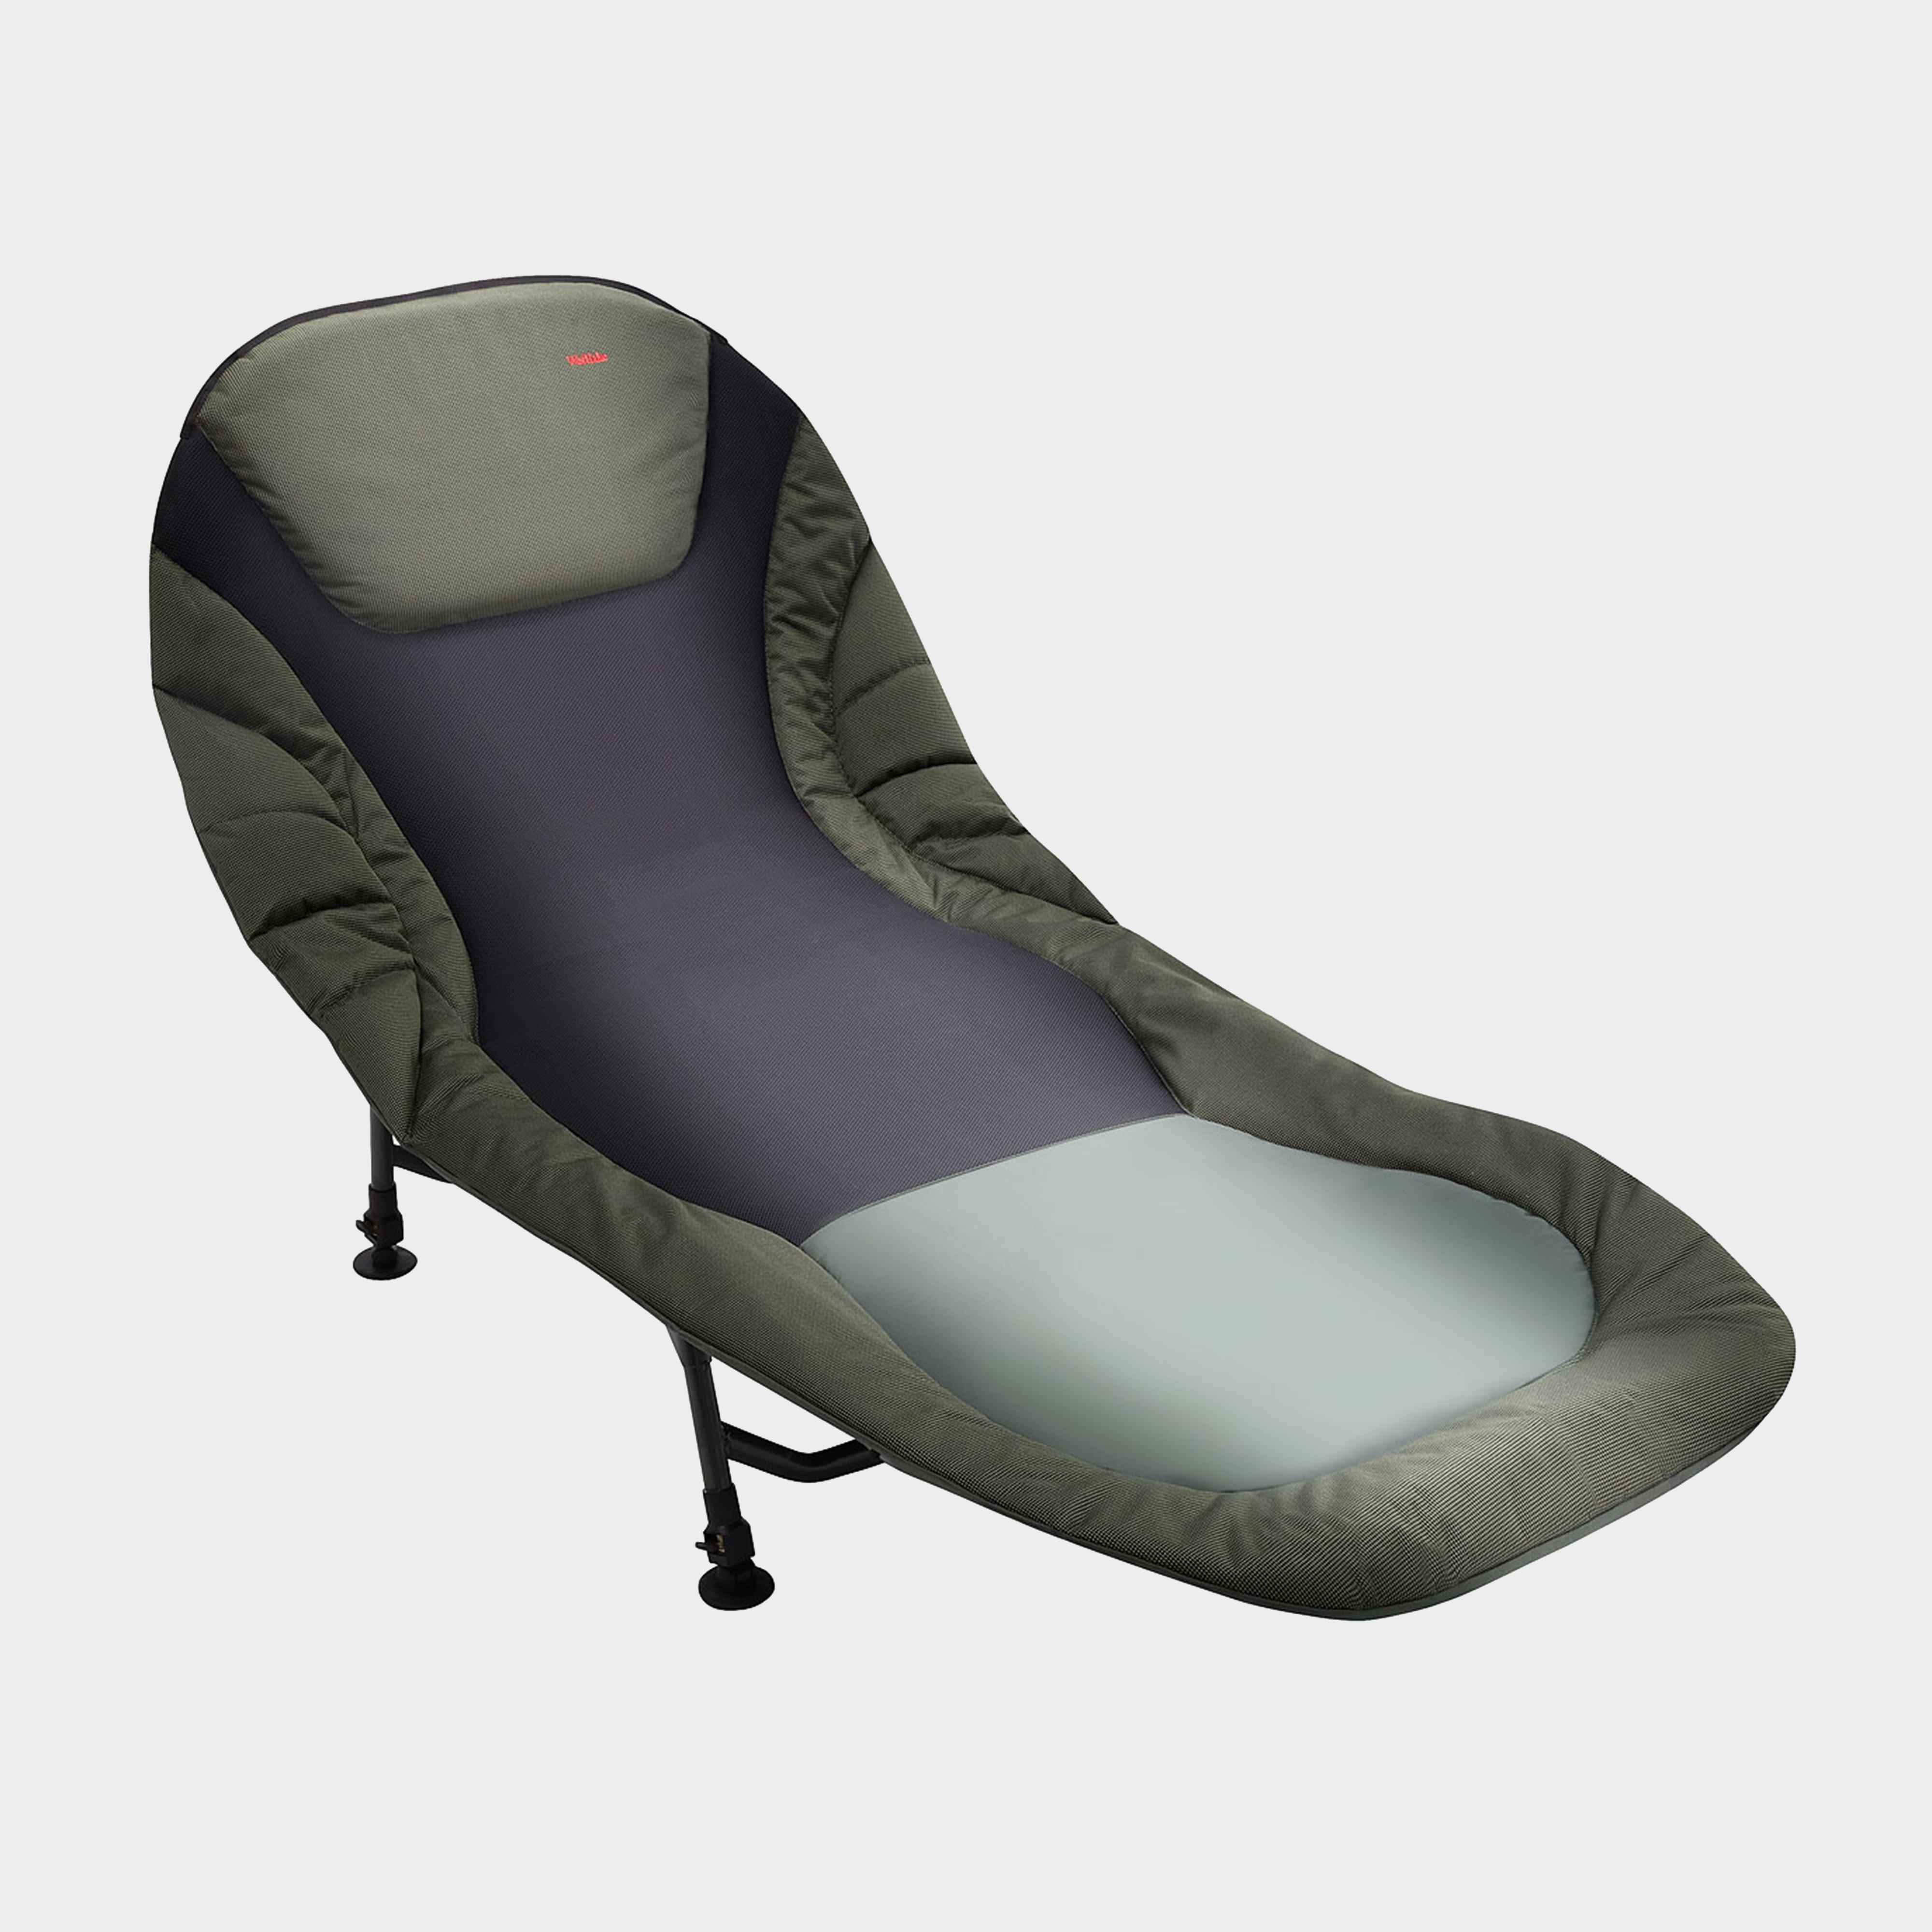 Westlake Comfort Bedchair - Bedchair/bedchair  Bedchair/bedchair